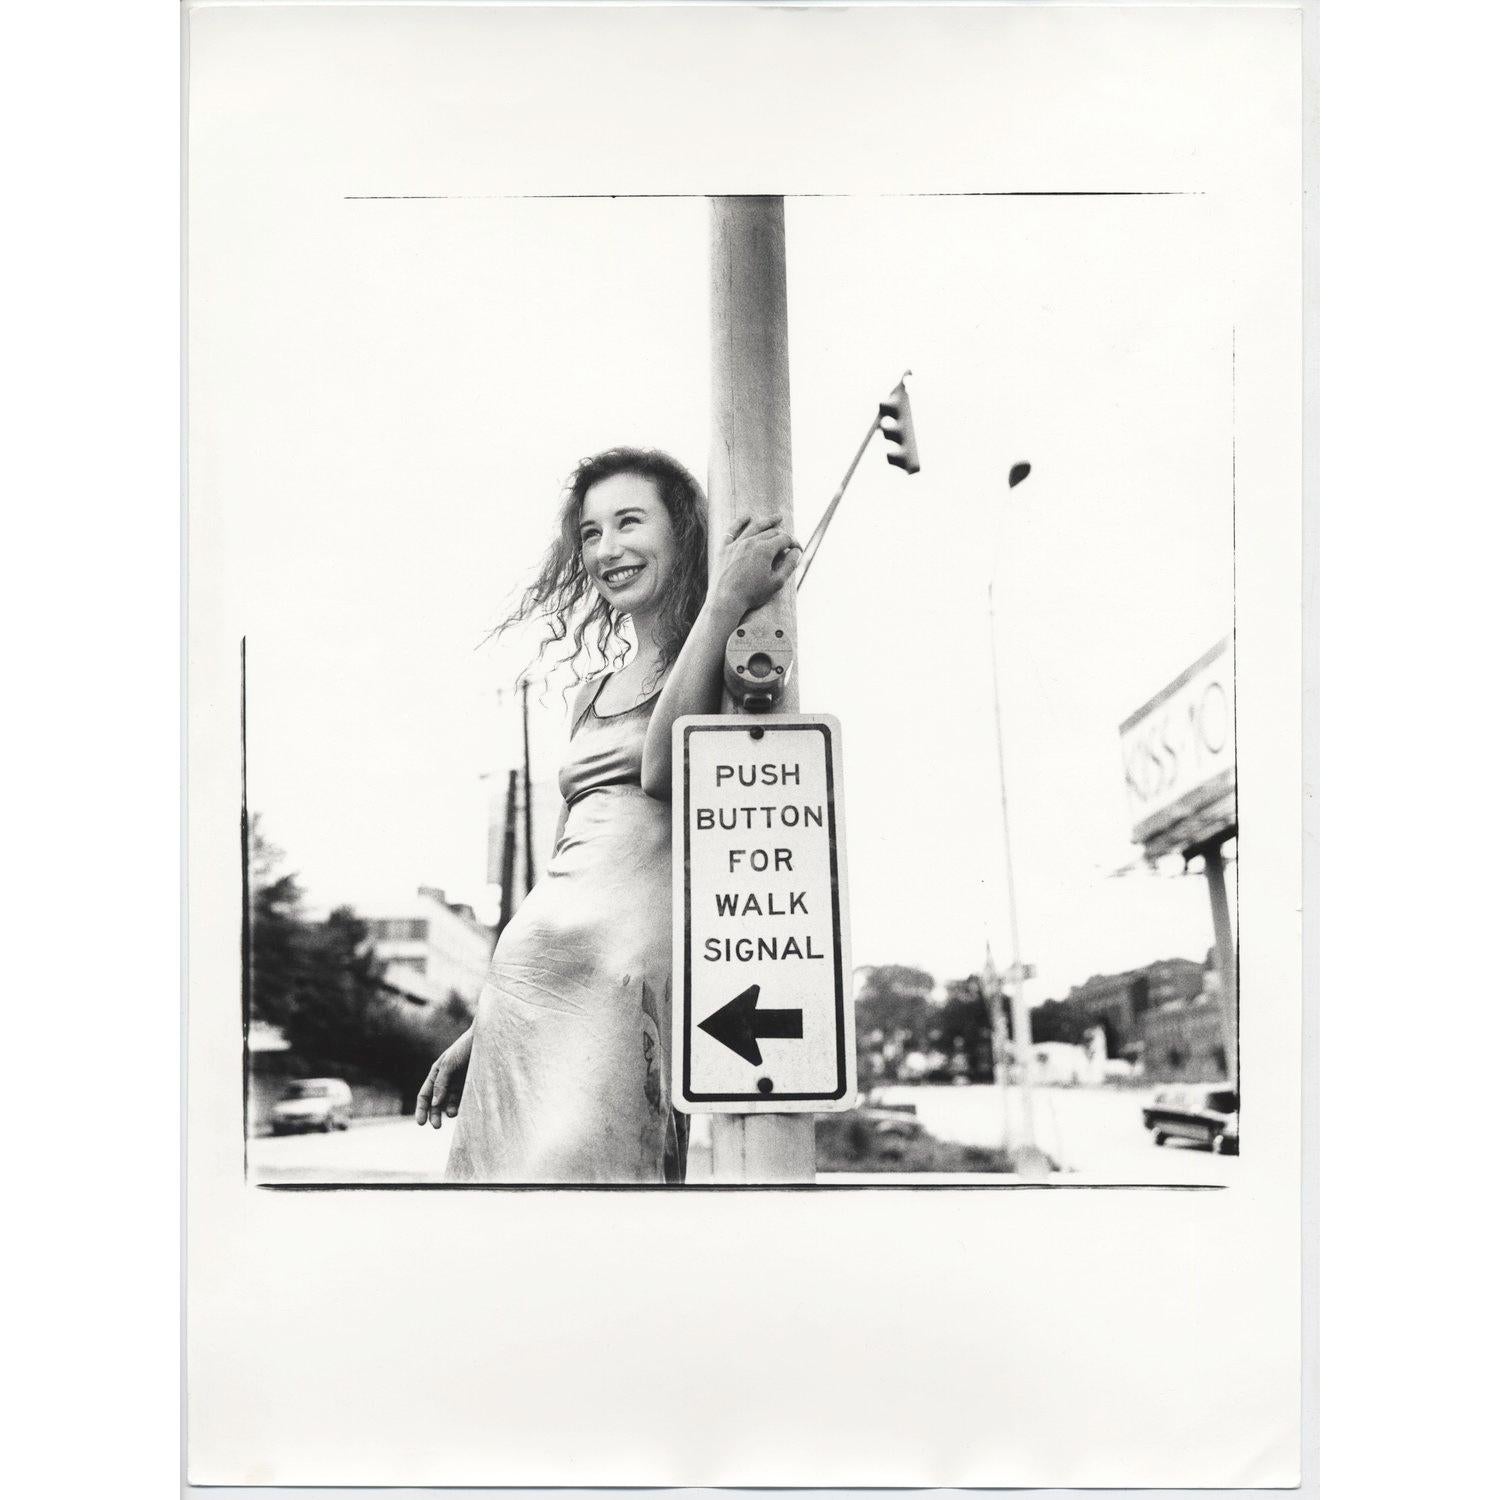 Originaler handgedruckter 12x16"-Dunkelkammer-Vintage-Druck des Fotografen Jake Chessum von Tori Amos. Gedruckt von Jake in den 90er Jahren, zur Zeit des Fotoshootings. 

Jake erinnert sich an die Session: "Tori Amos spielte 1994 zwei Abende in